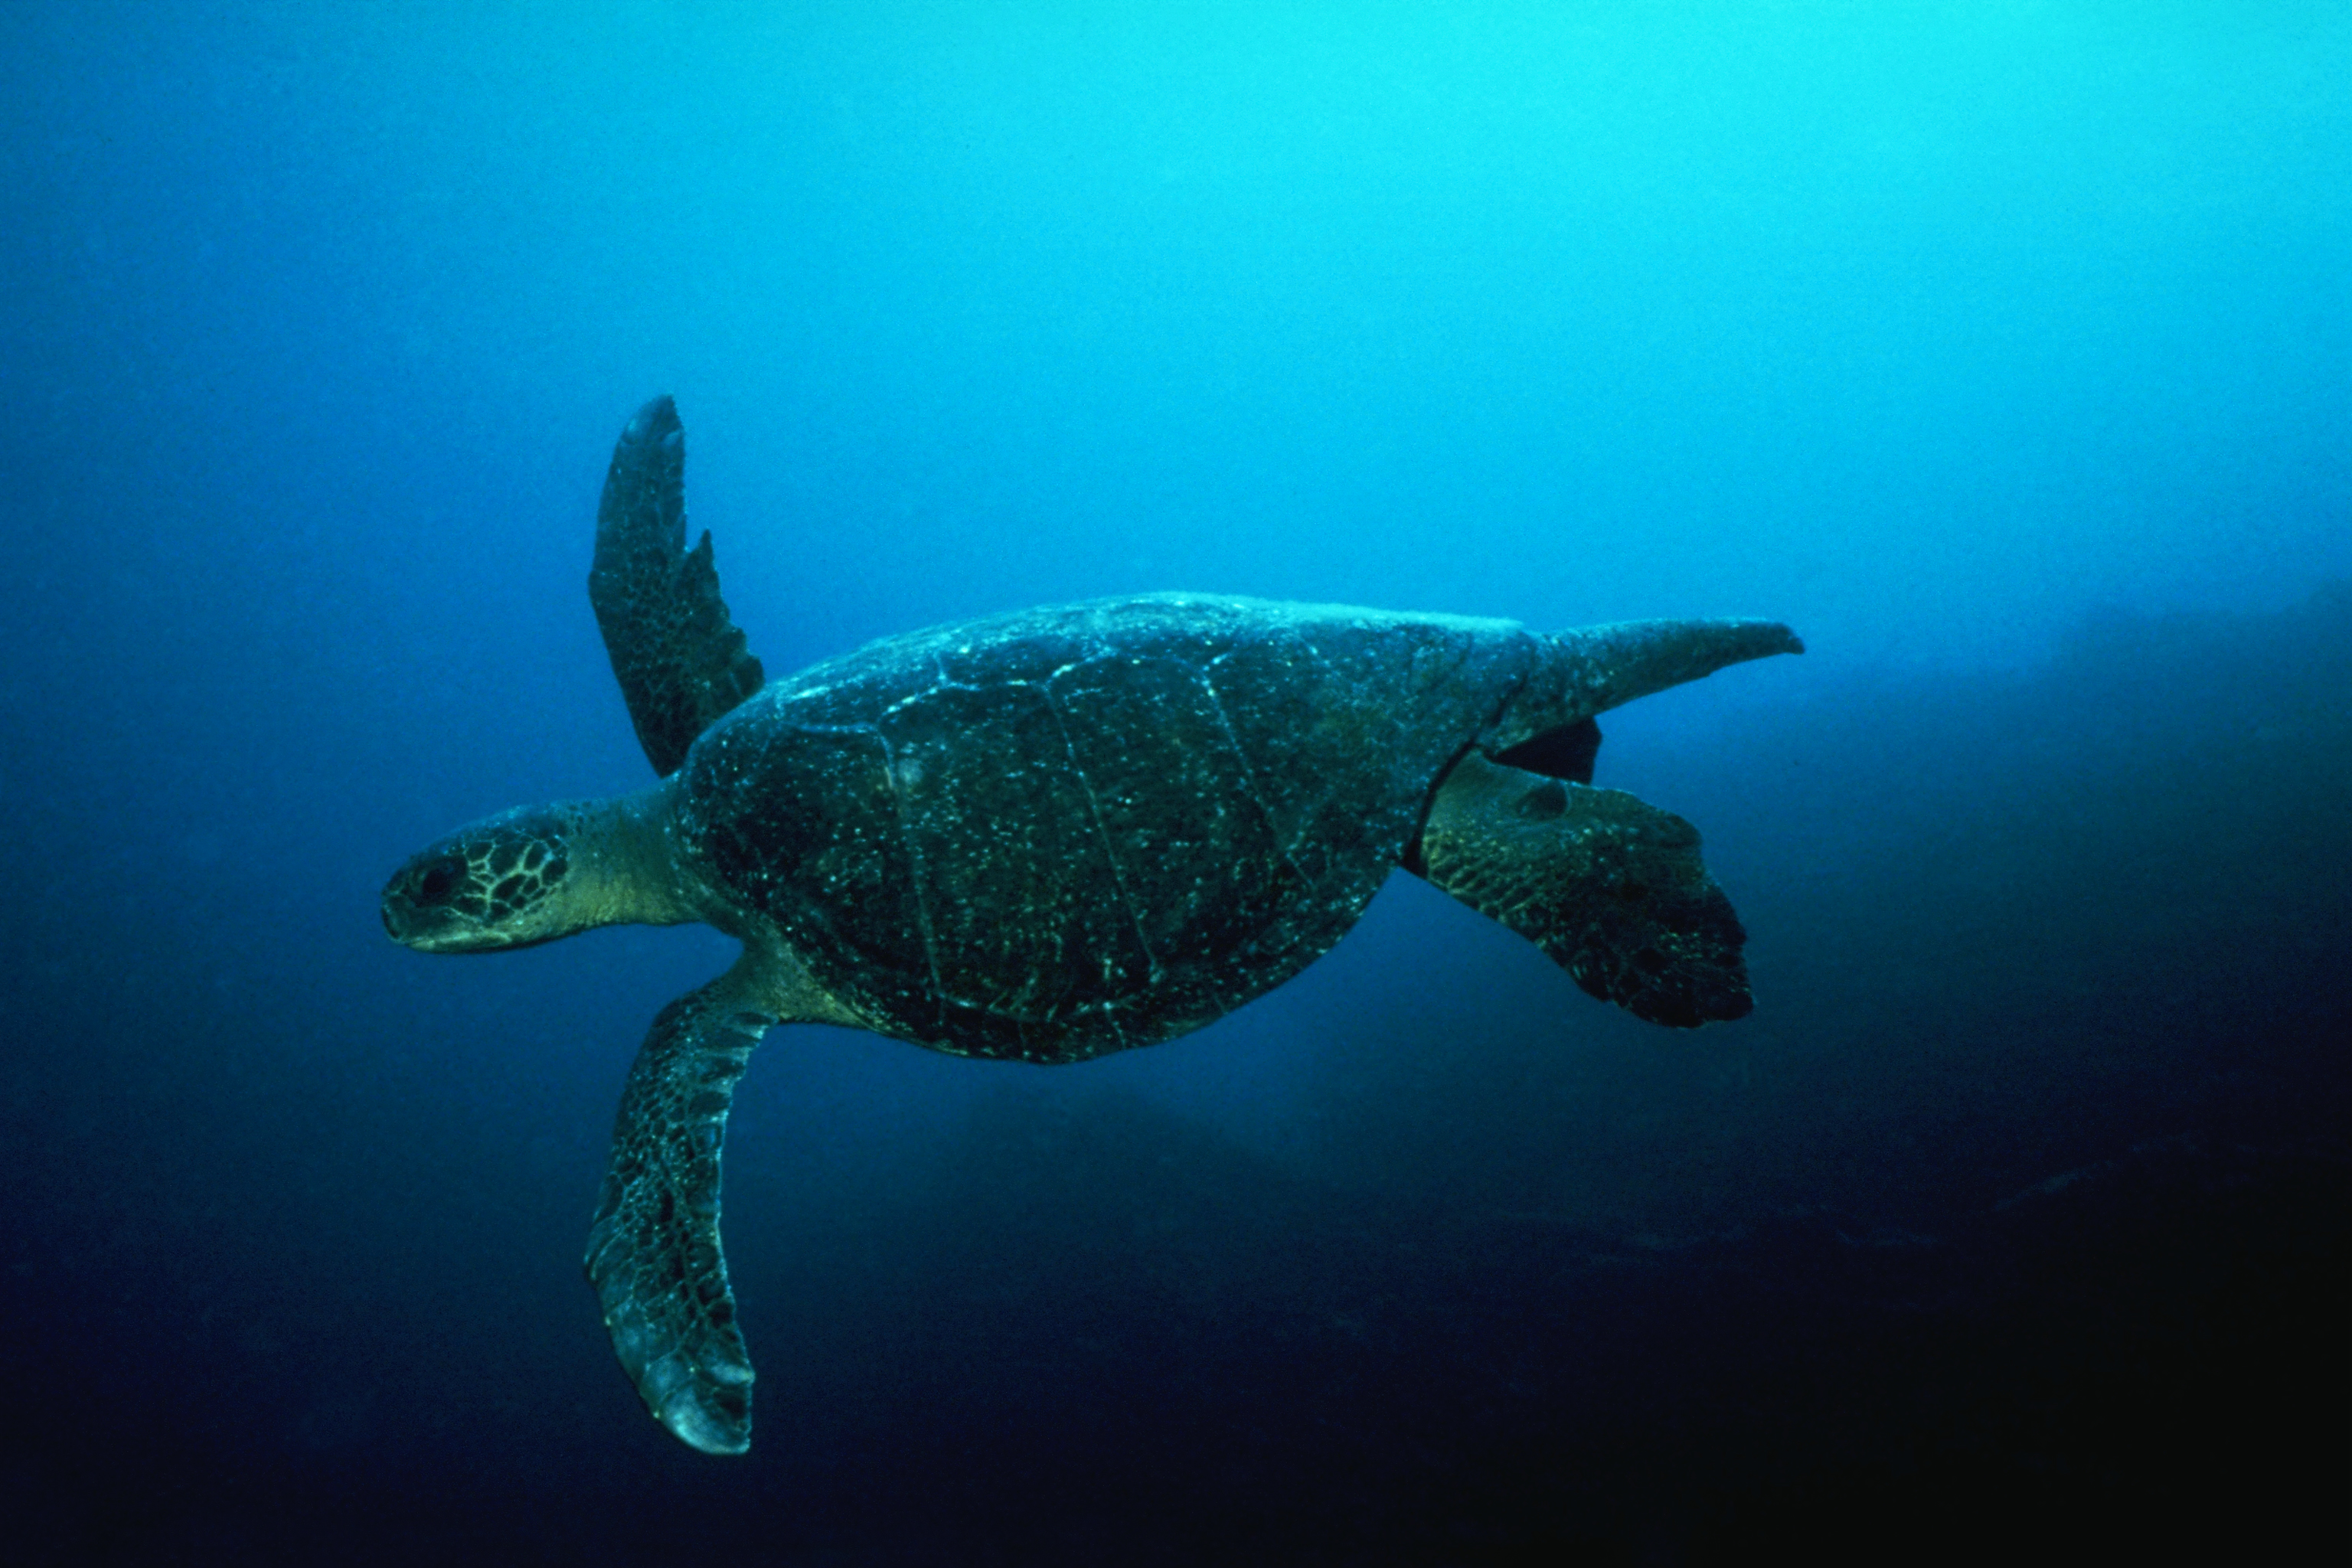 turtles, underwater - desktop wallpaper